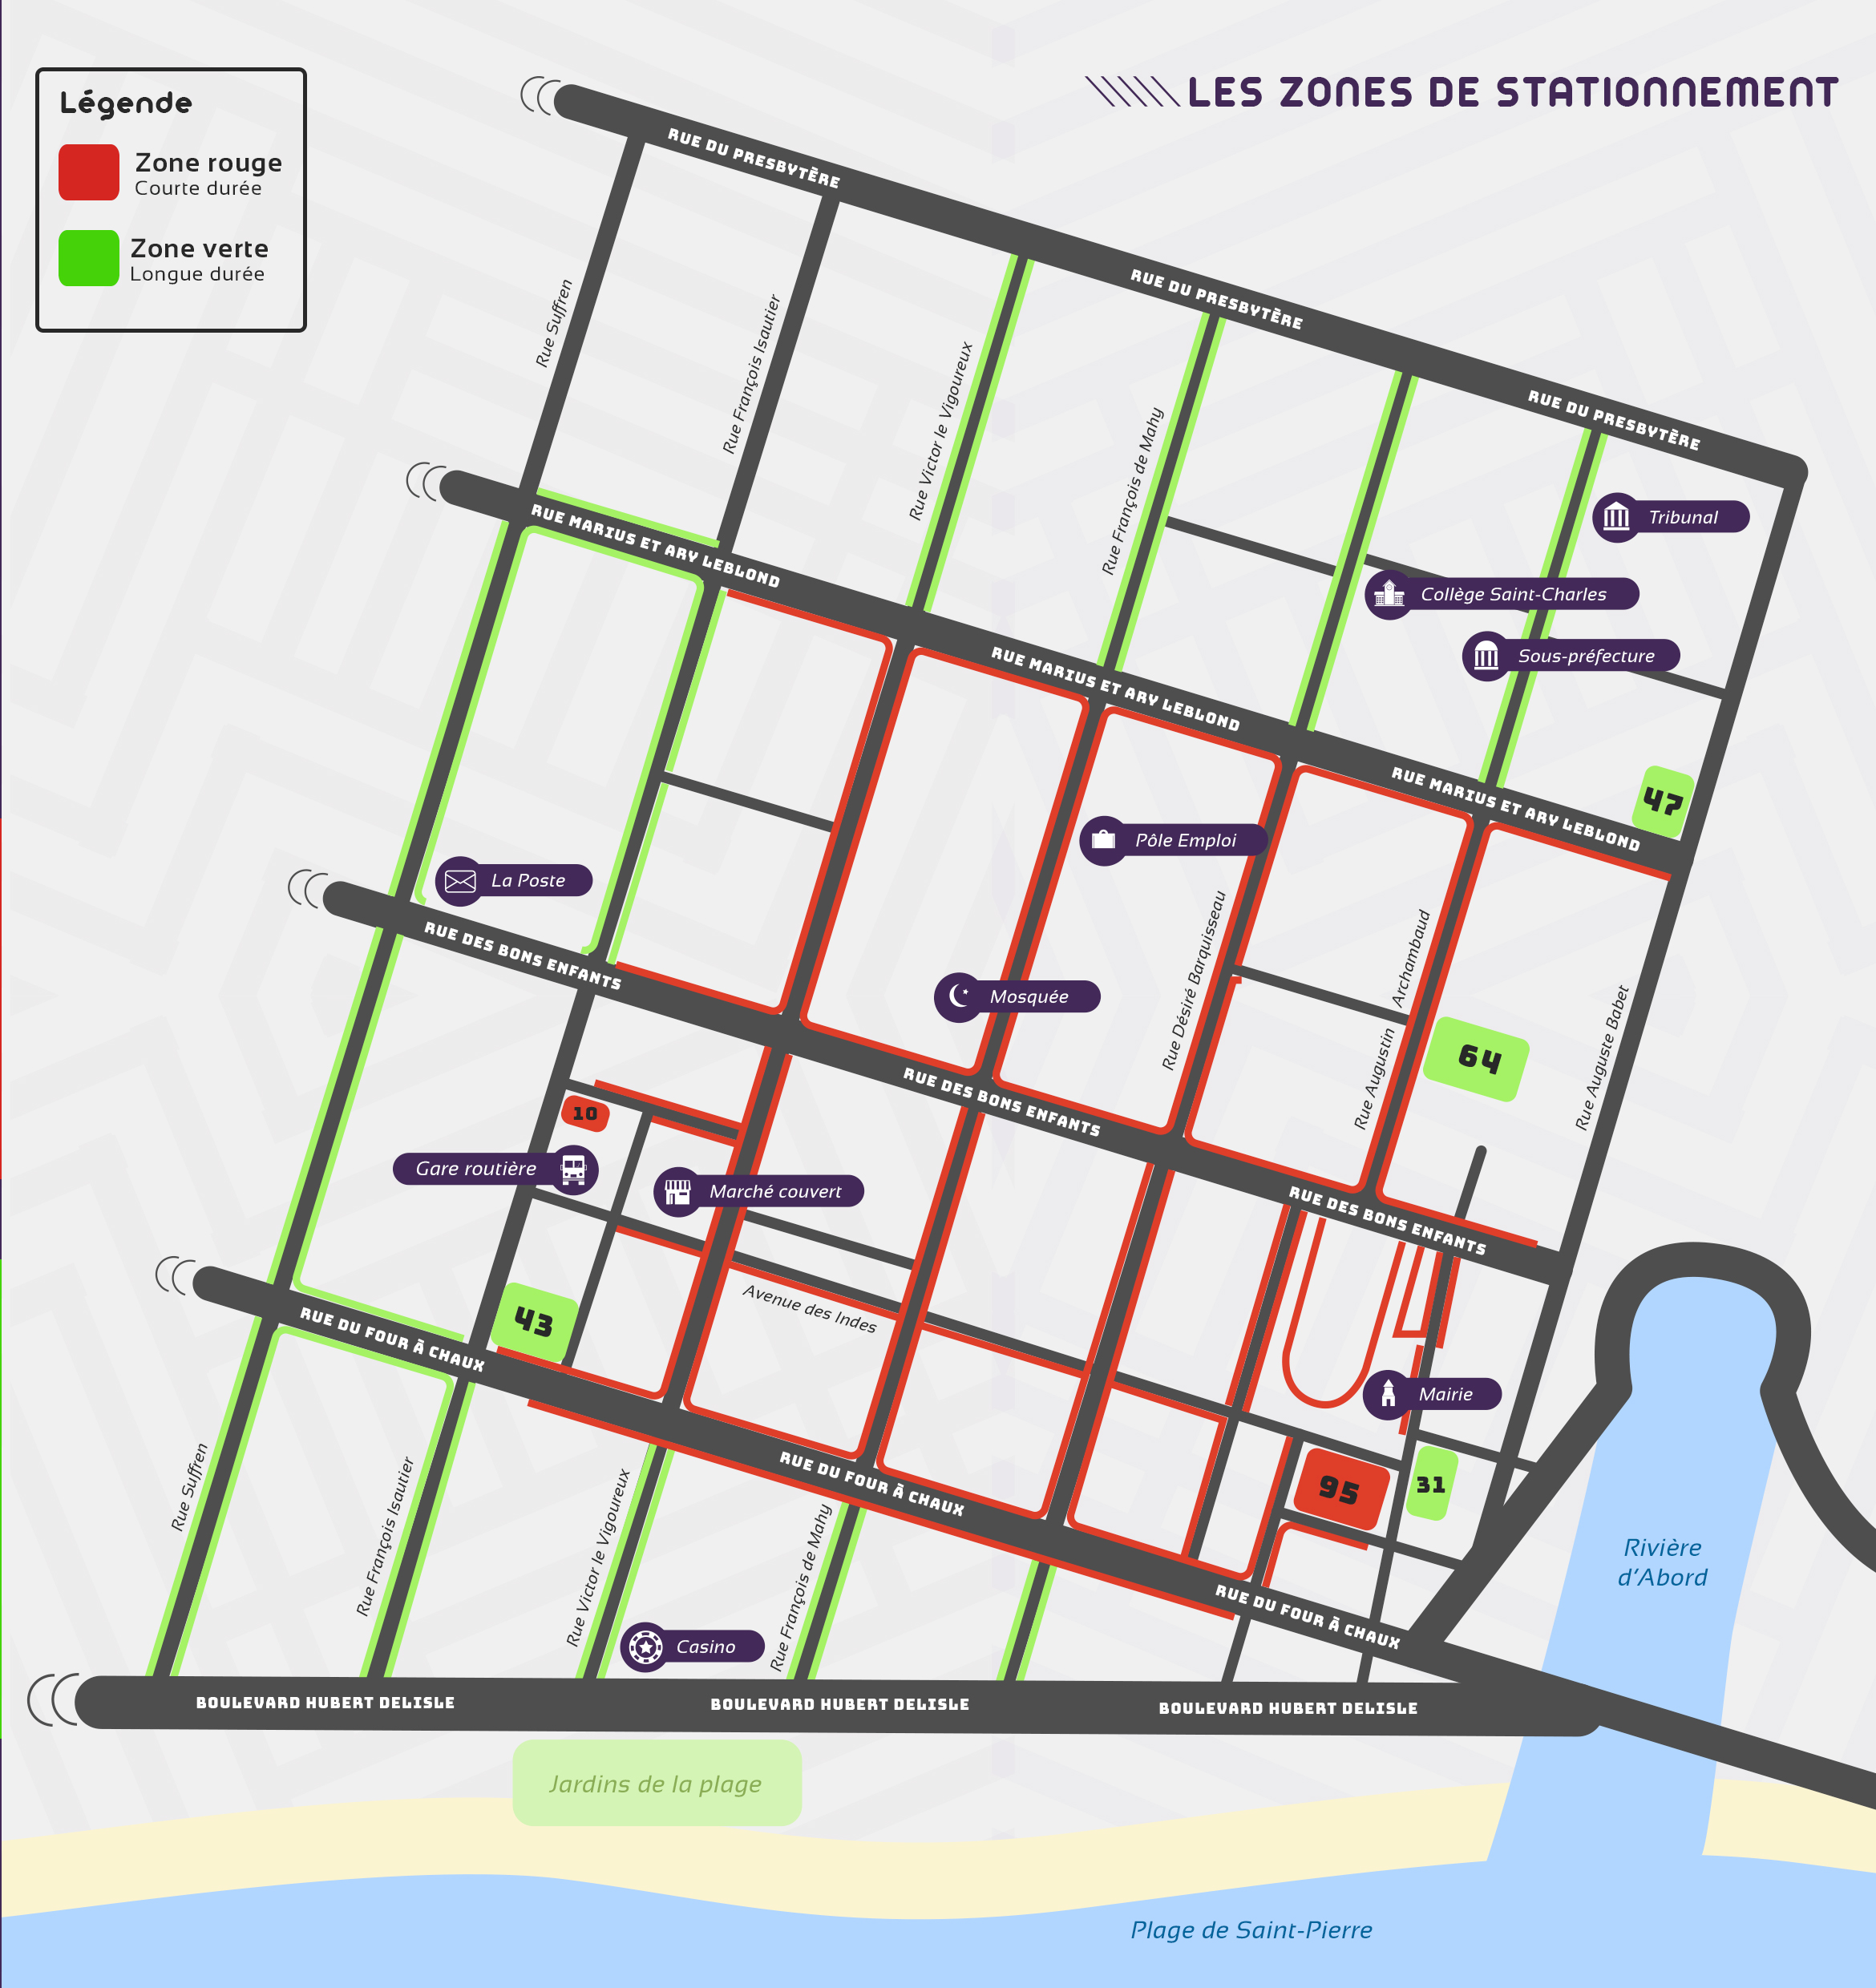 PayByPhone: Une application pour régler son stationnement en centre-ville de St-Pierre